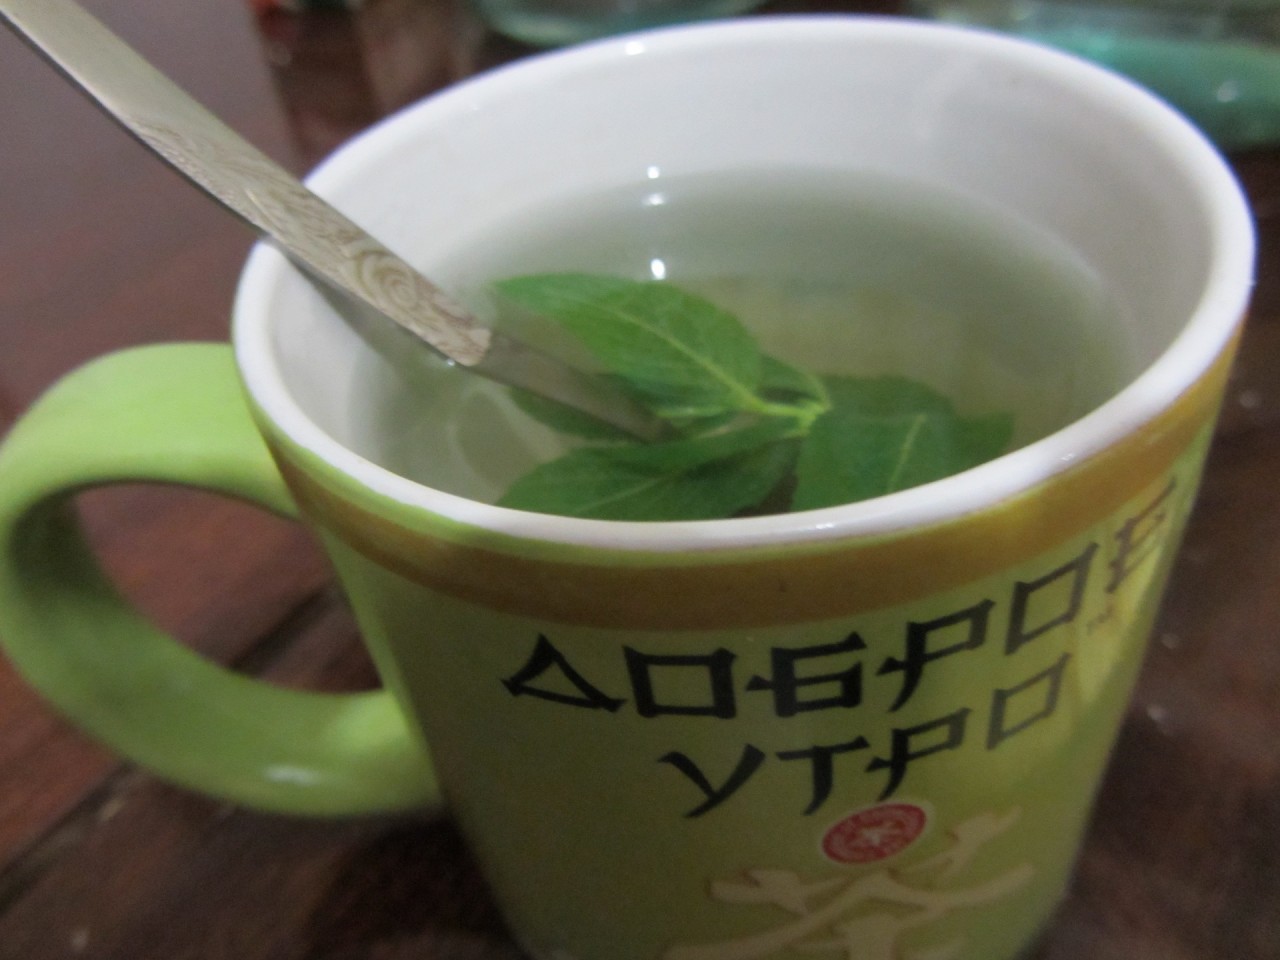 Как Заварить Мятный Чай Из Свежей Мяты - основные характеристики